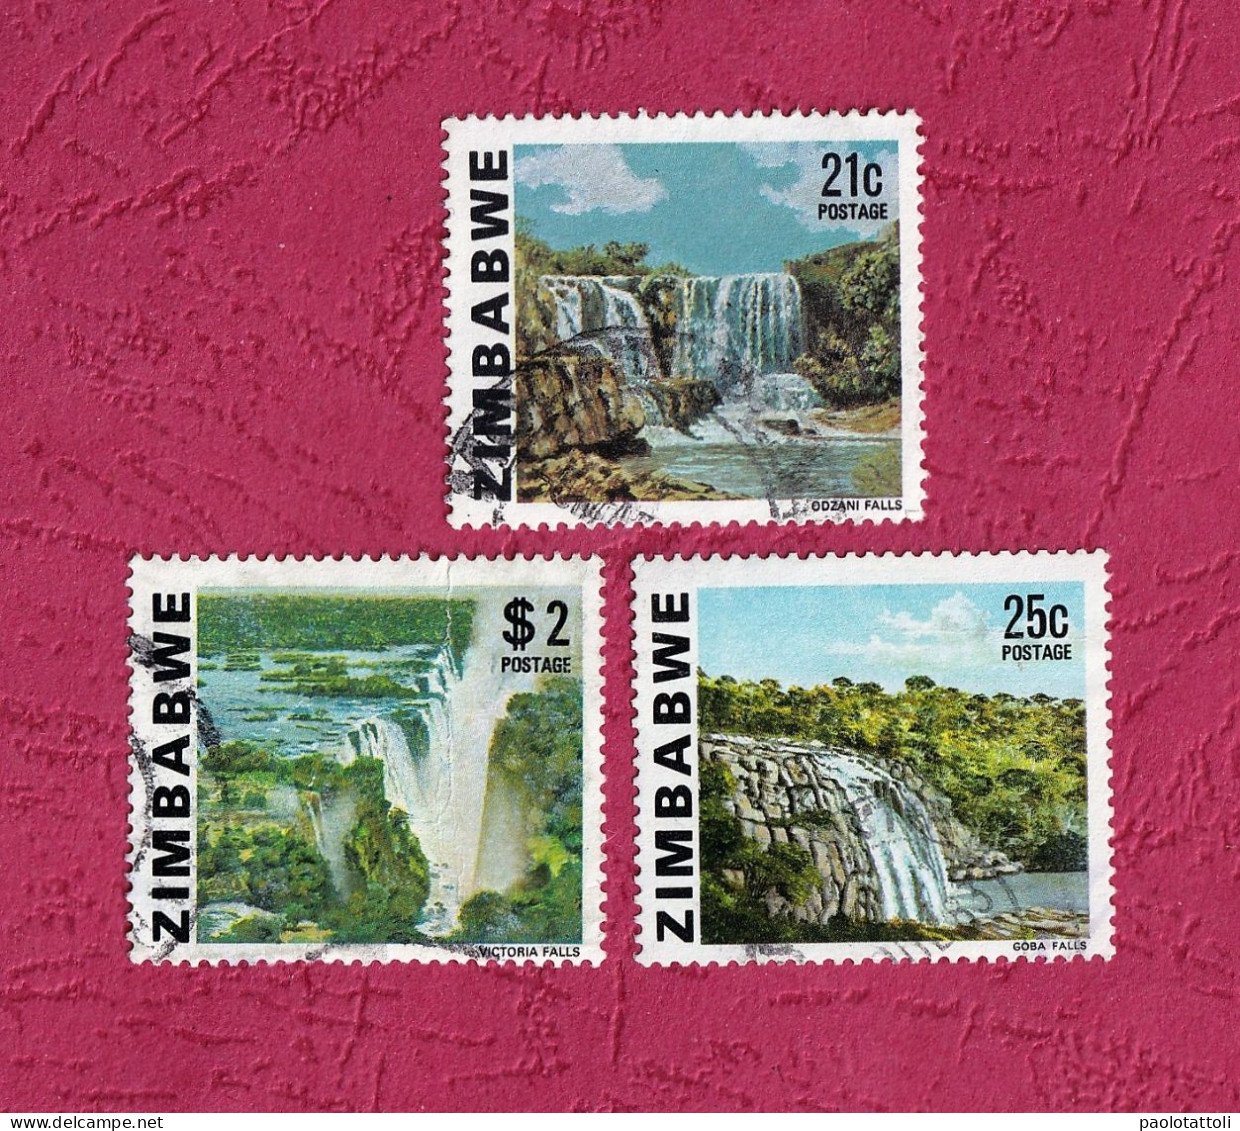 Zimbawe, 1980- Victoria, Goba And Odzani Falls. Lot Of Three Stamps. UsedNH - Zimbabwe (1980-...)